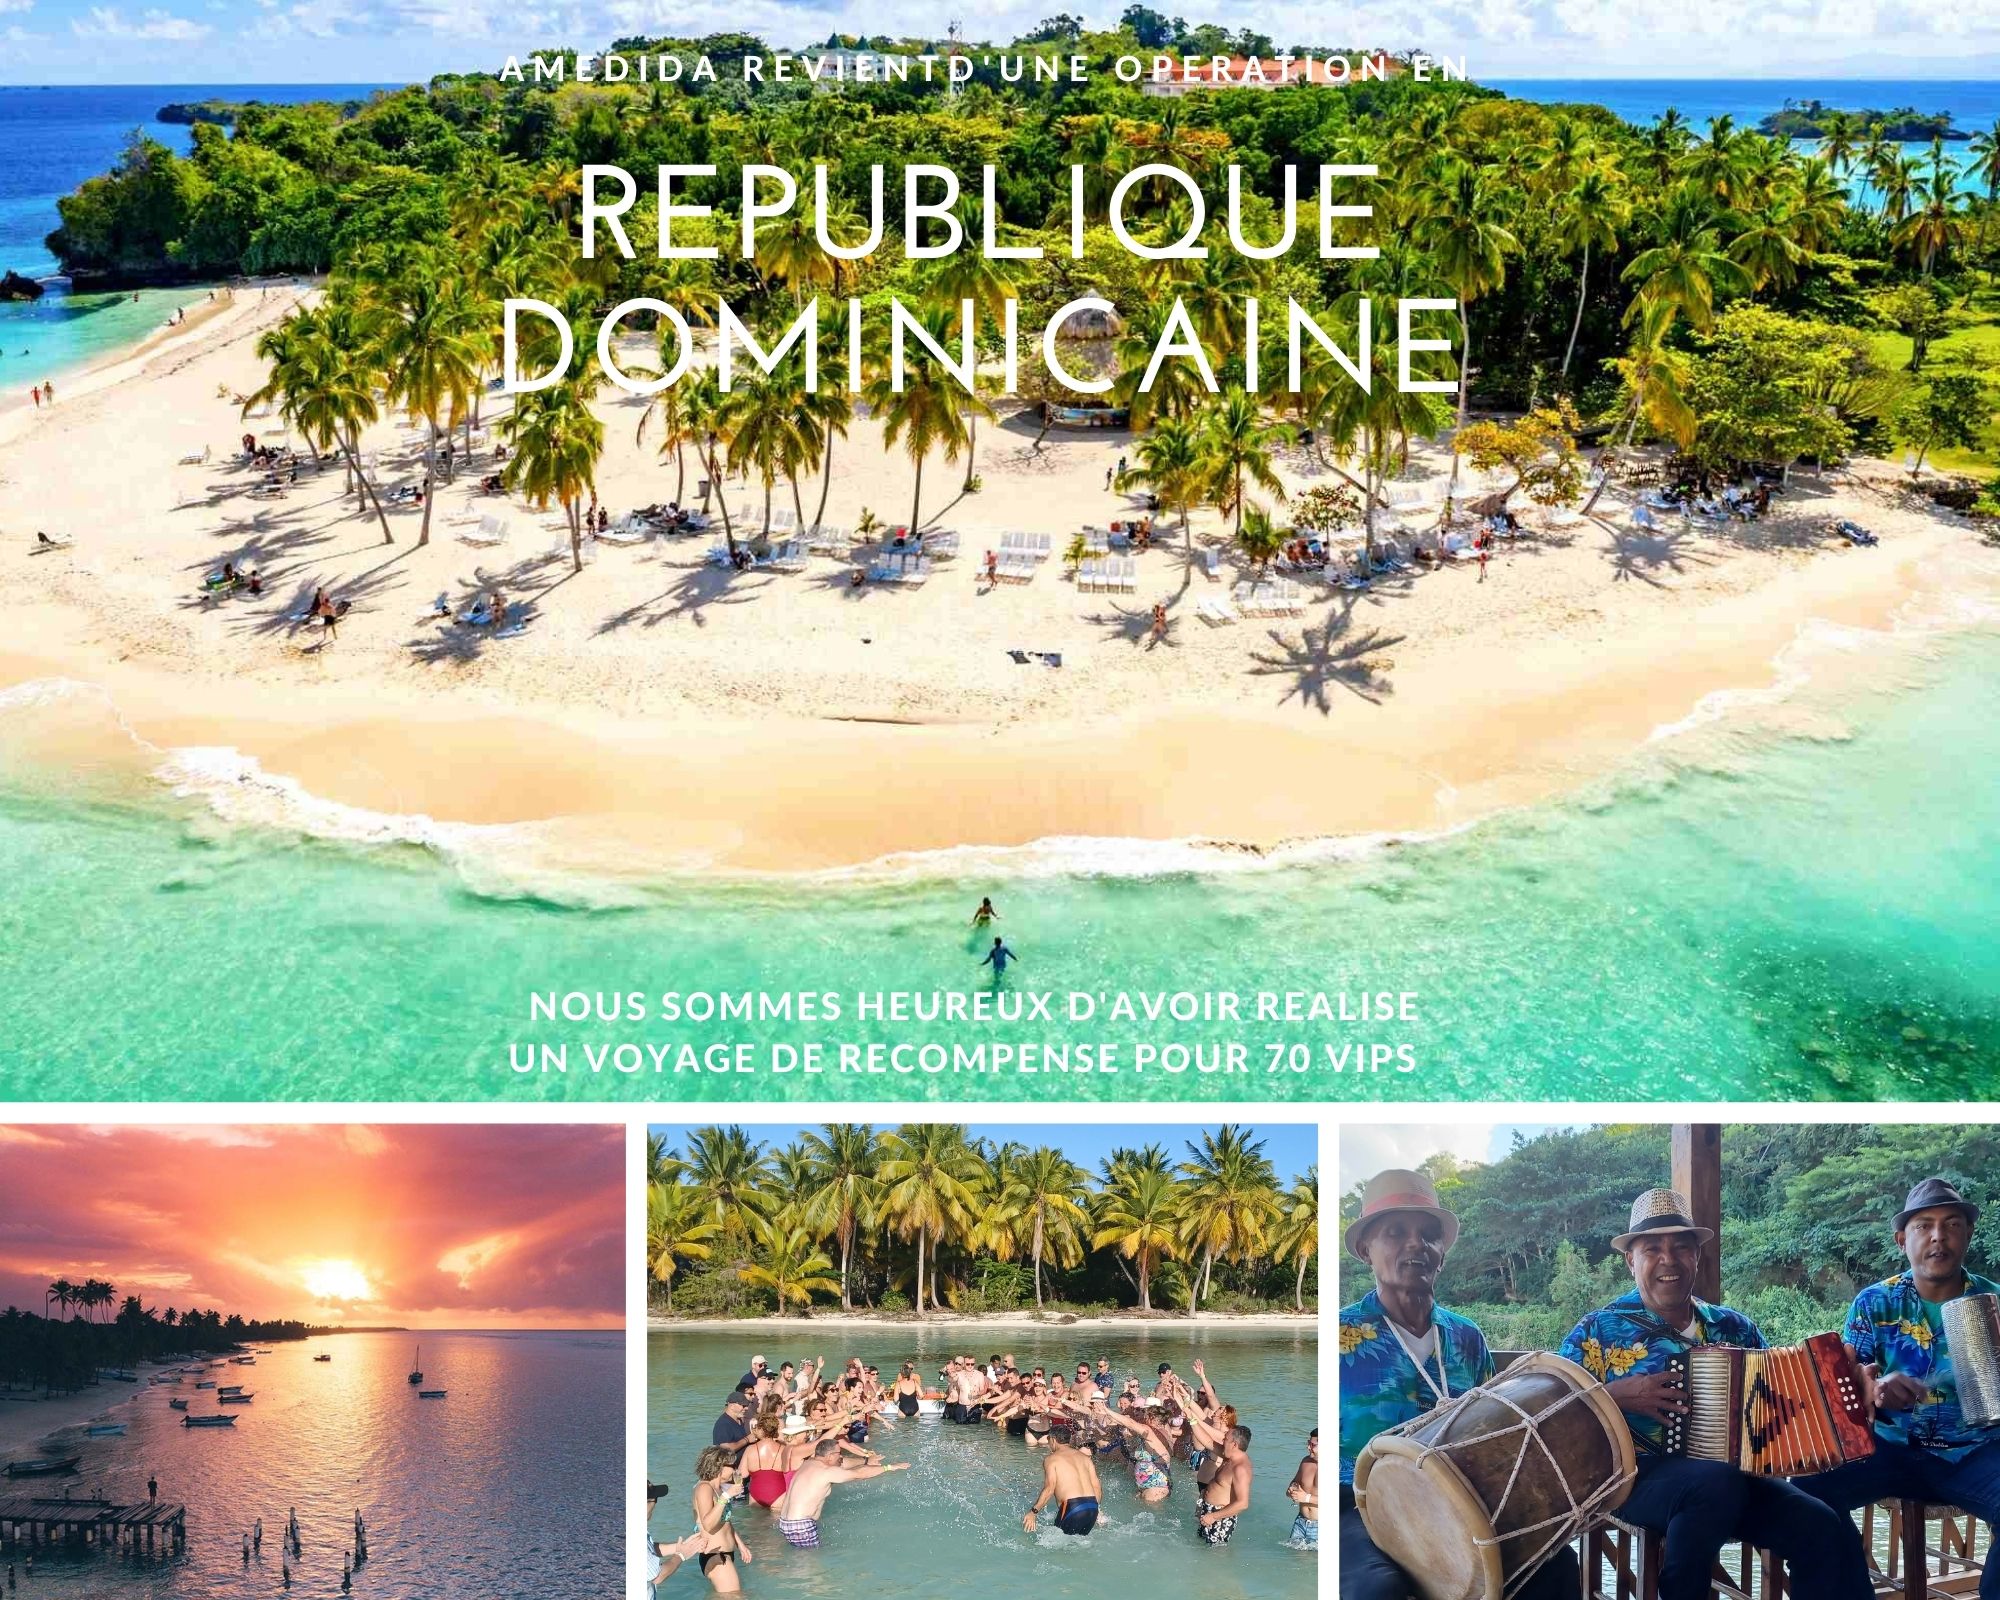 AMEDIDA DE RETOUR DE REPUBLIQUE DOMINICAINE – DU SOLEIL EN PLEIN HIVER !